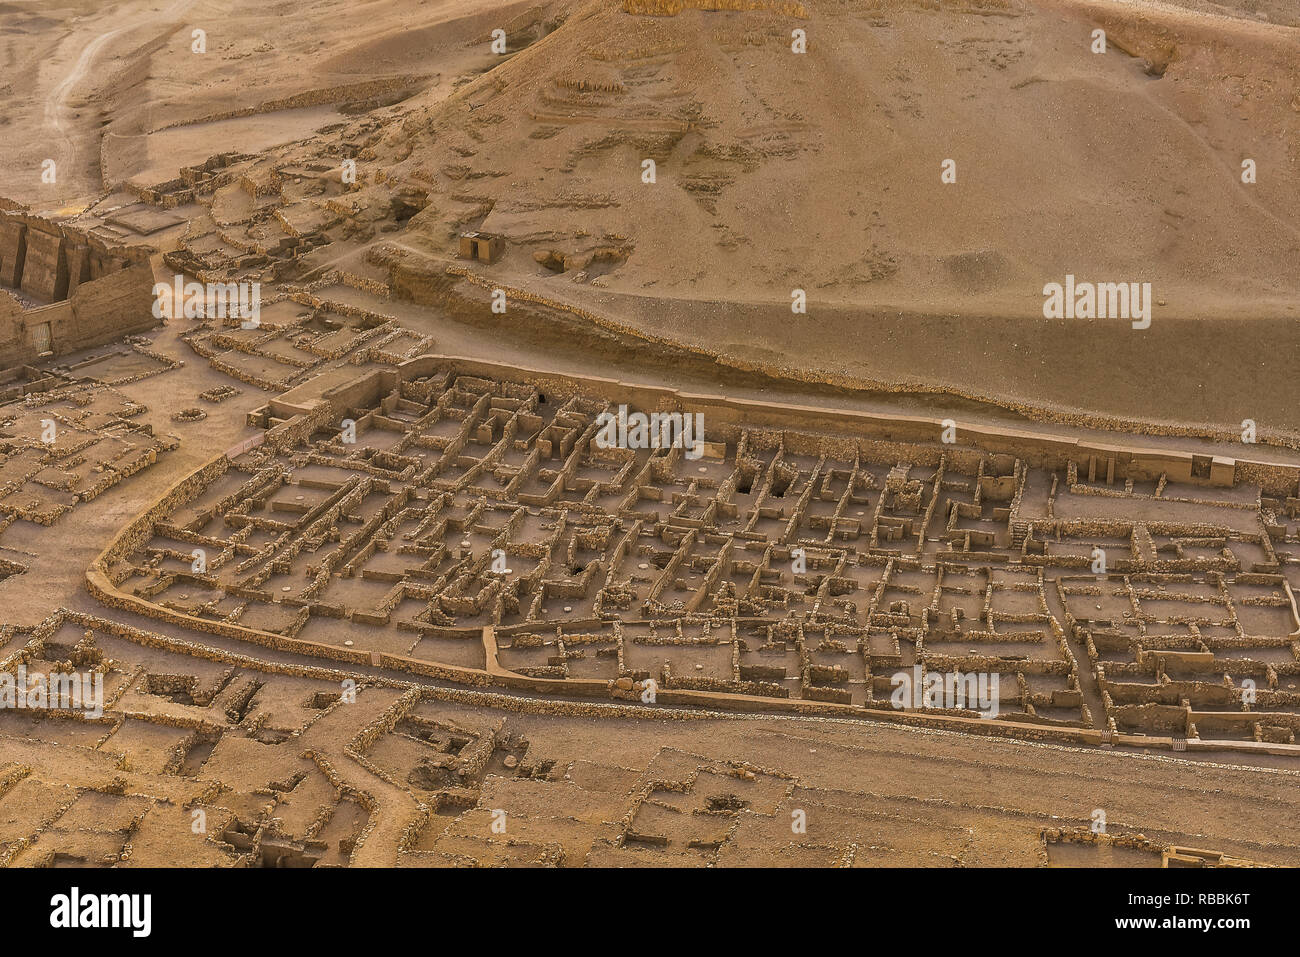 Antike Ruinen in das Dorf der Arbeiter in Deir El-Medina, eine Ansicht aus einem Heißluftballon, Luxor, Ägypten, 22. Oktober 2018 Stockfoto